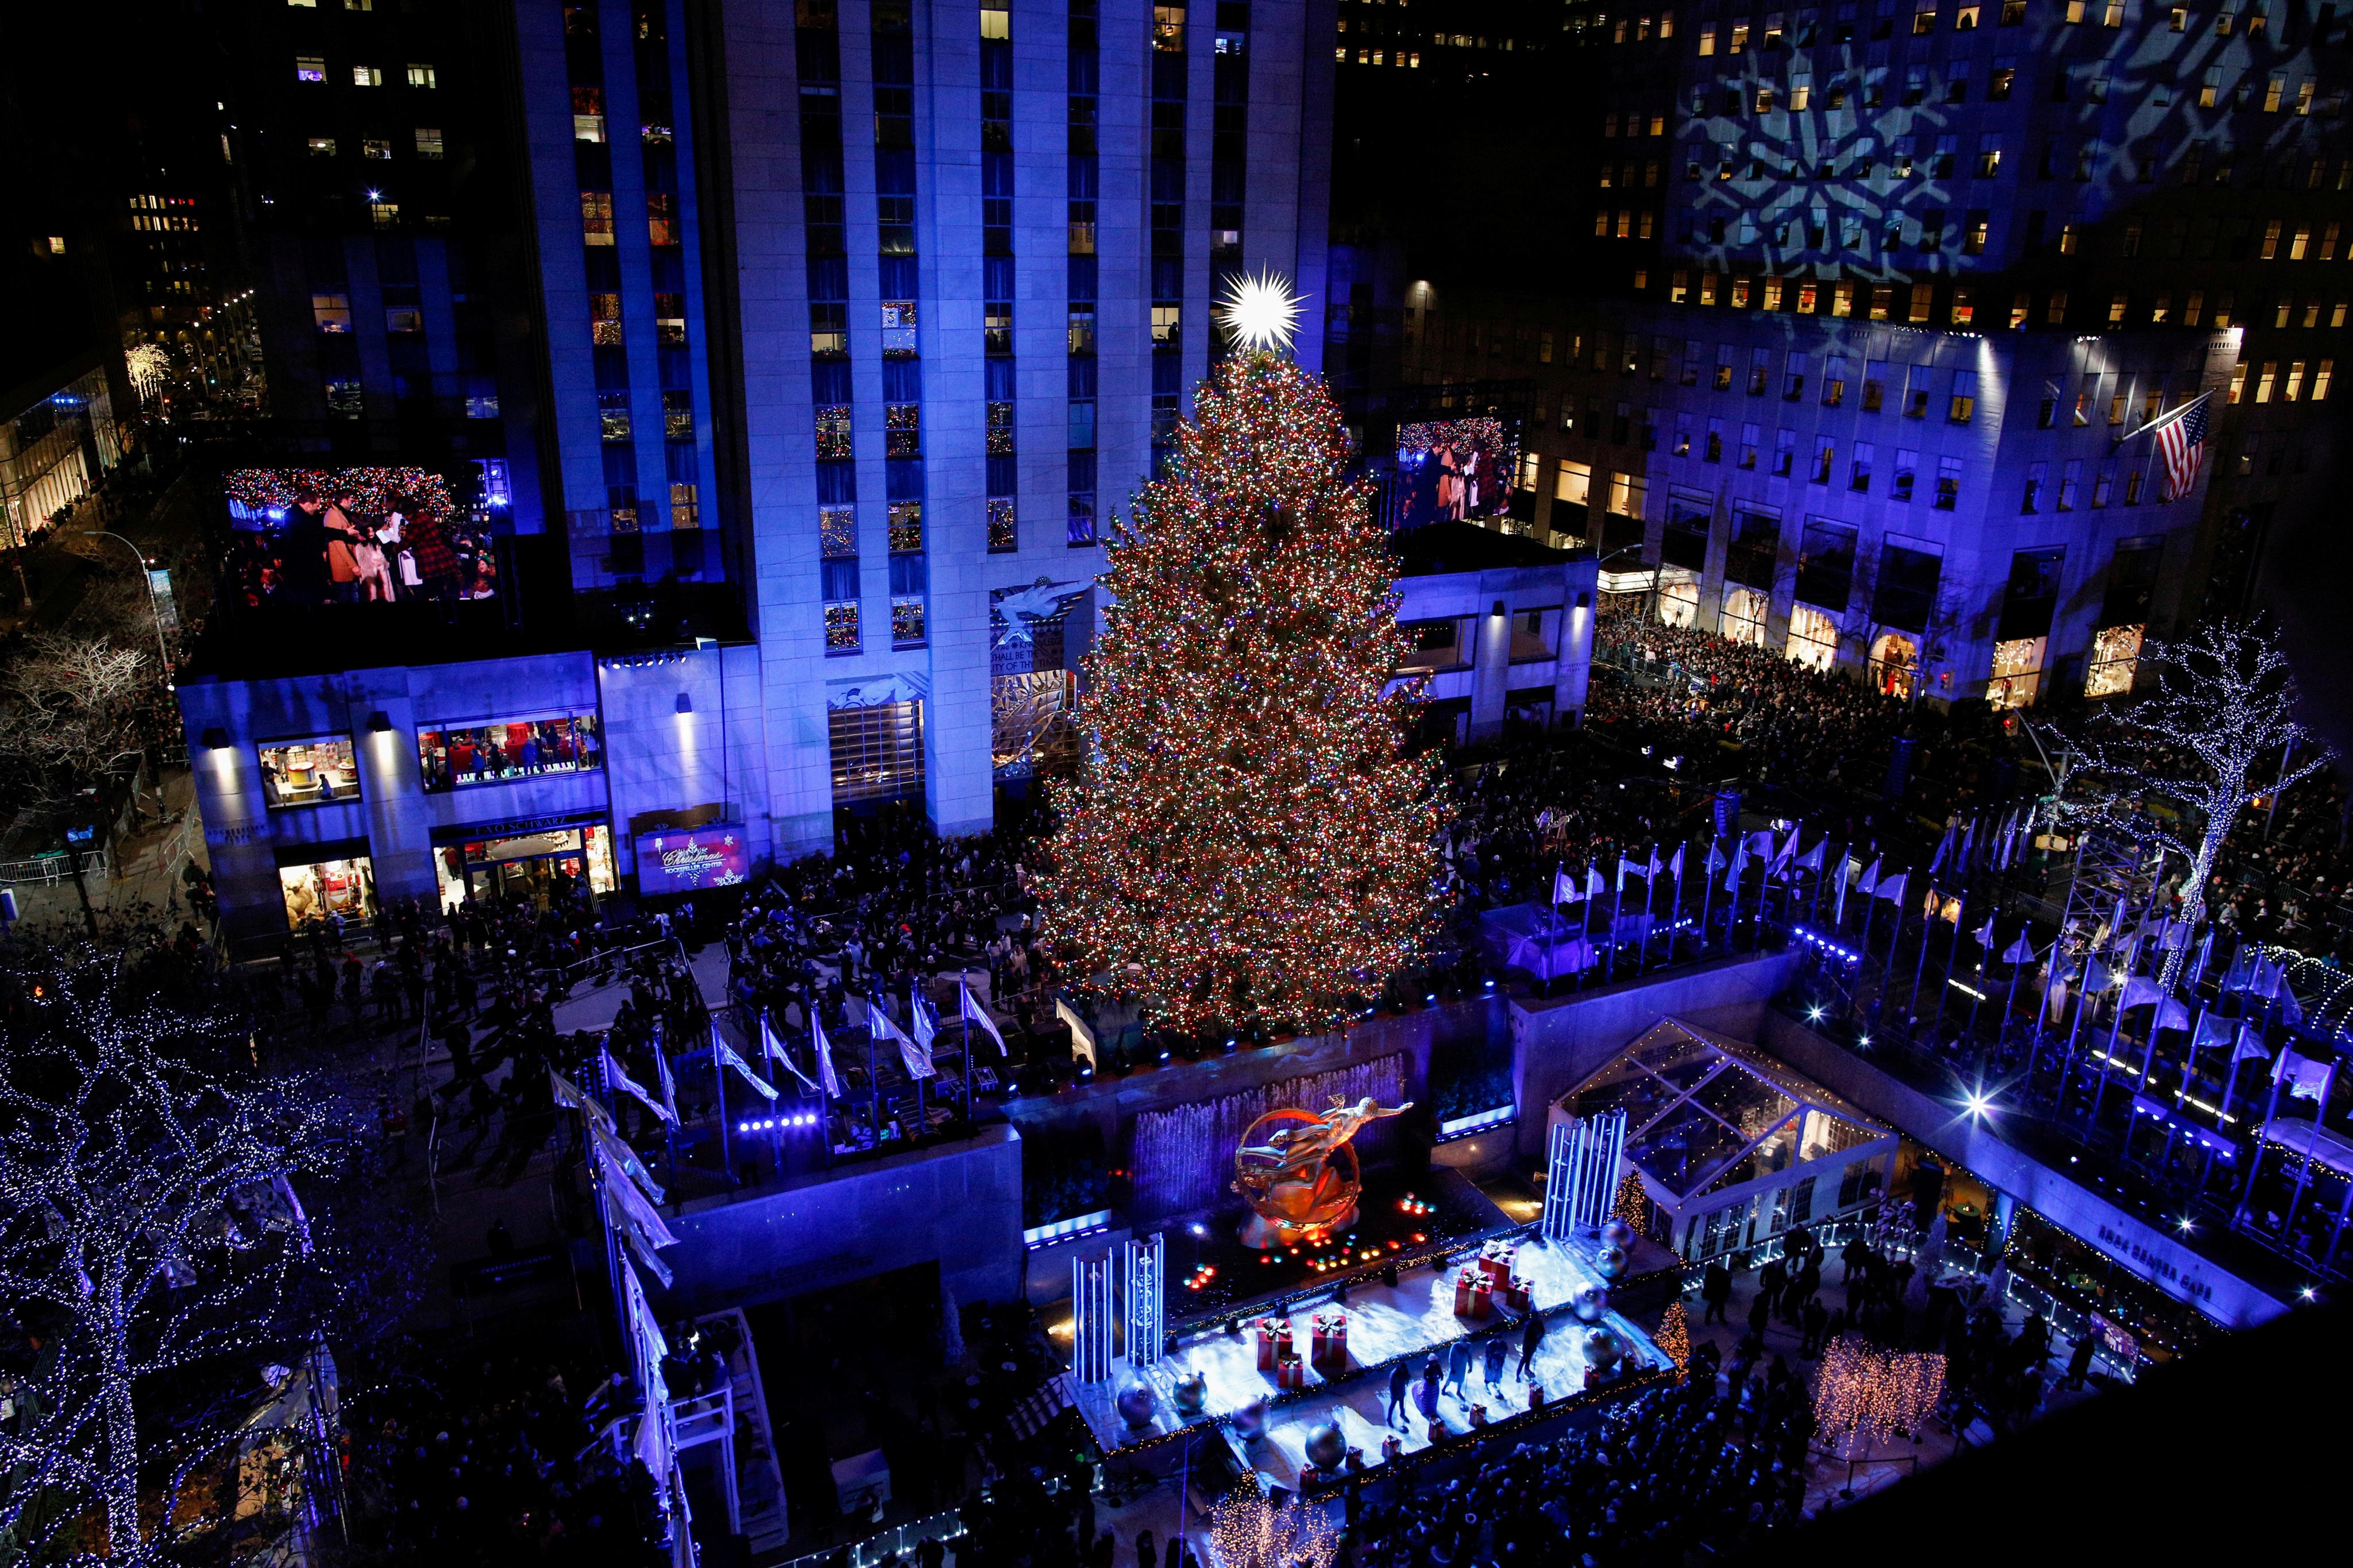 2018 Rockefeller Center Christmas Tree Lighting - Watch live stream, start time, TV channel ...